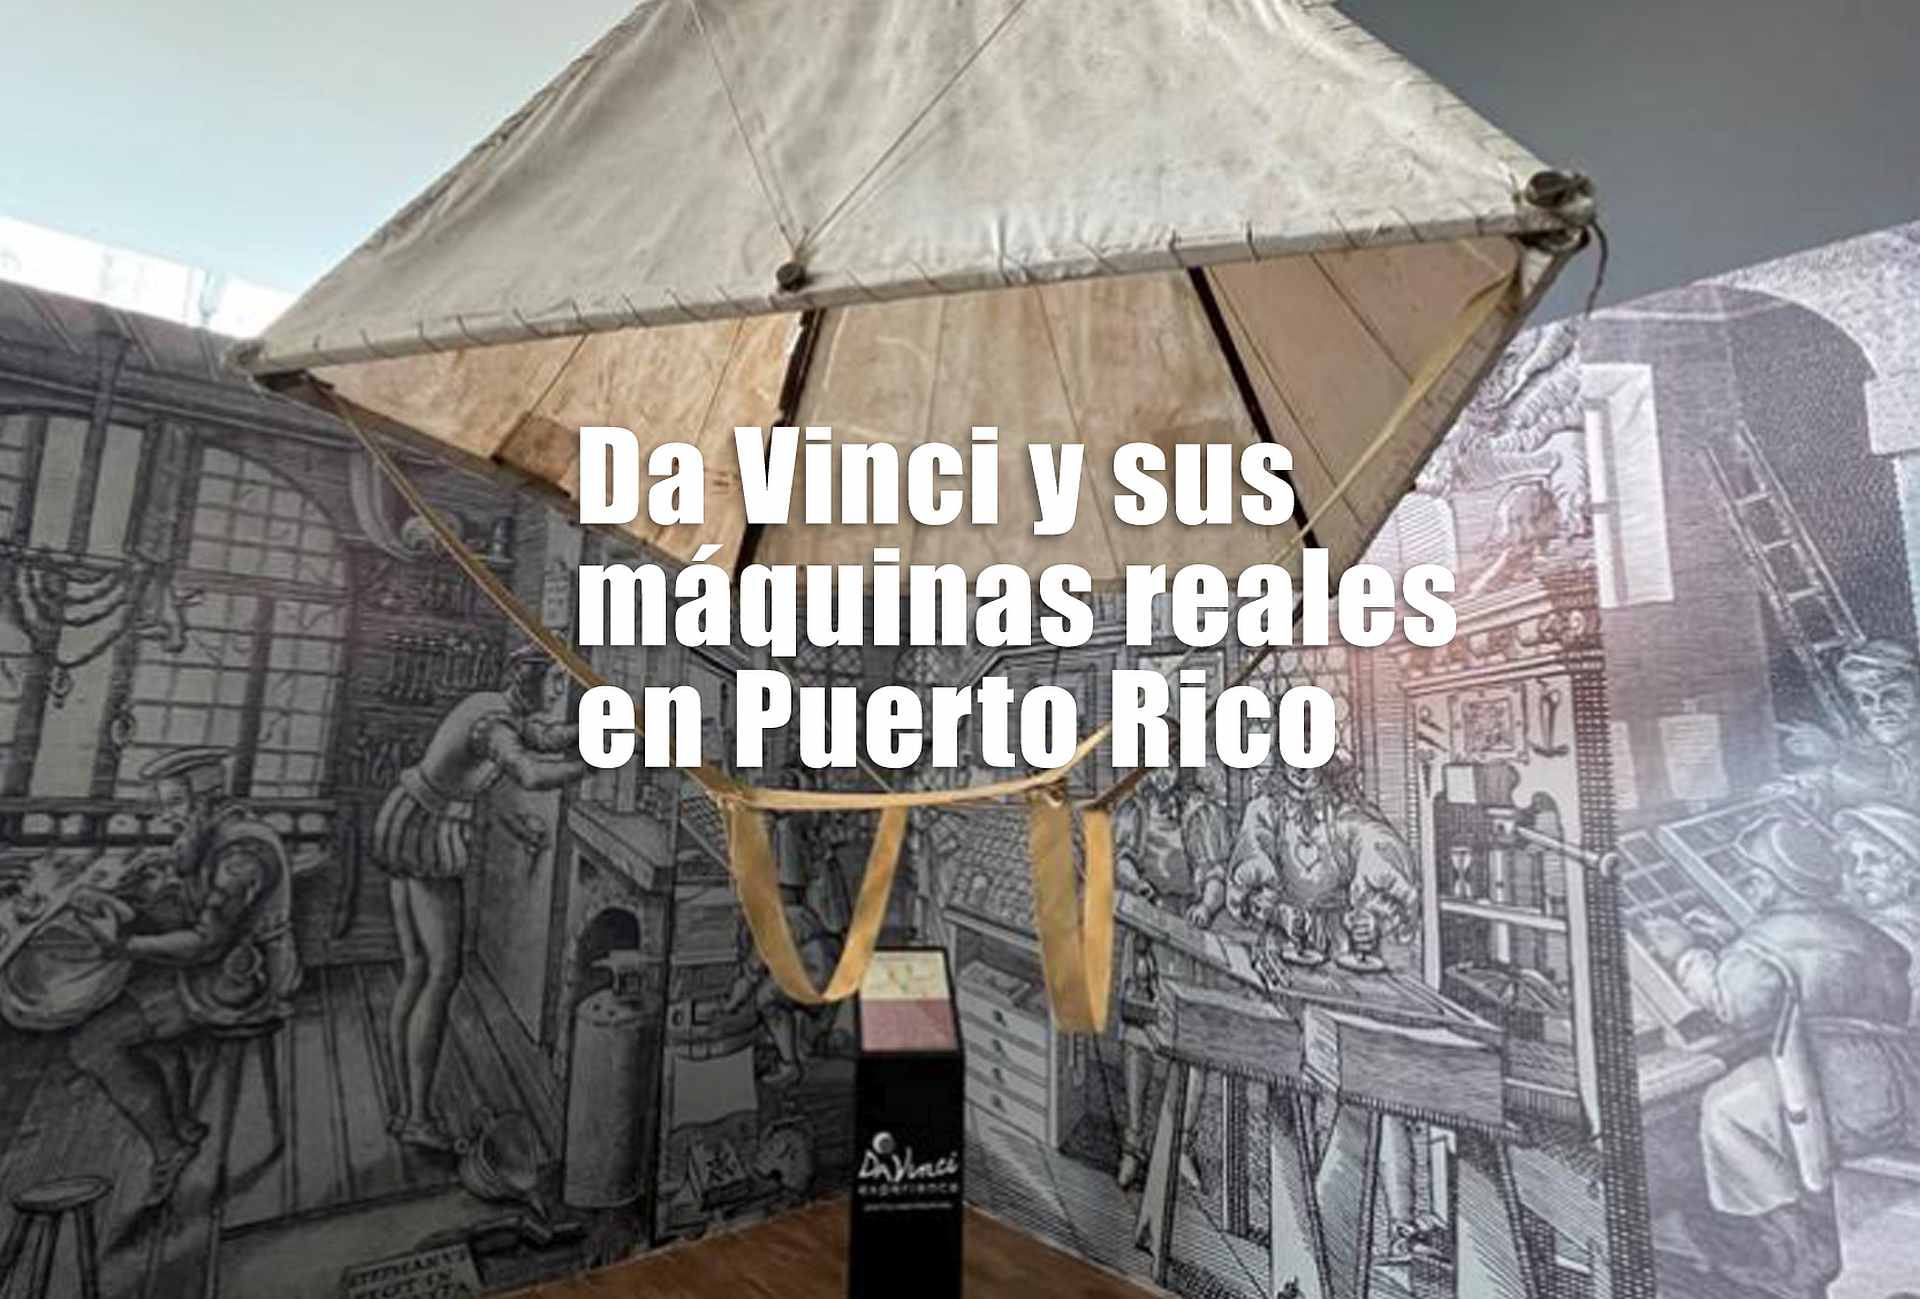 Da Vinci y sus máquinas reales en Puerto Rico